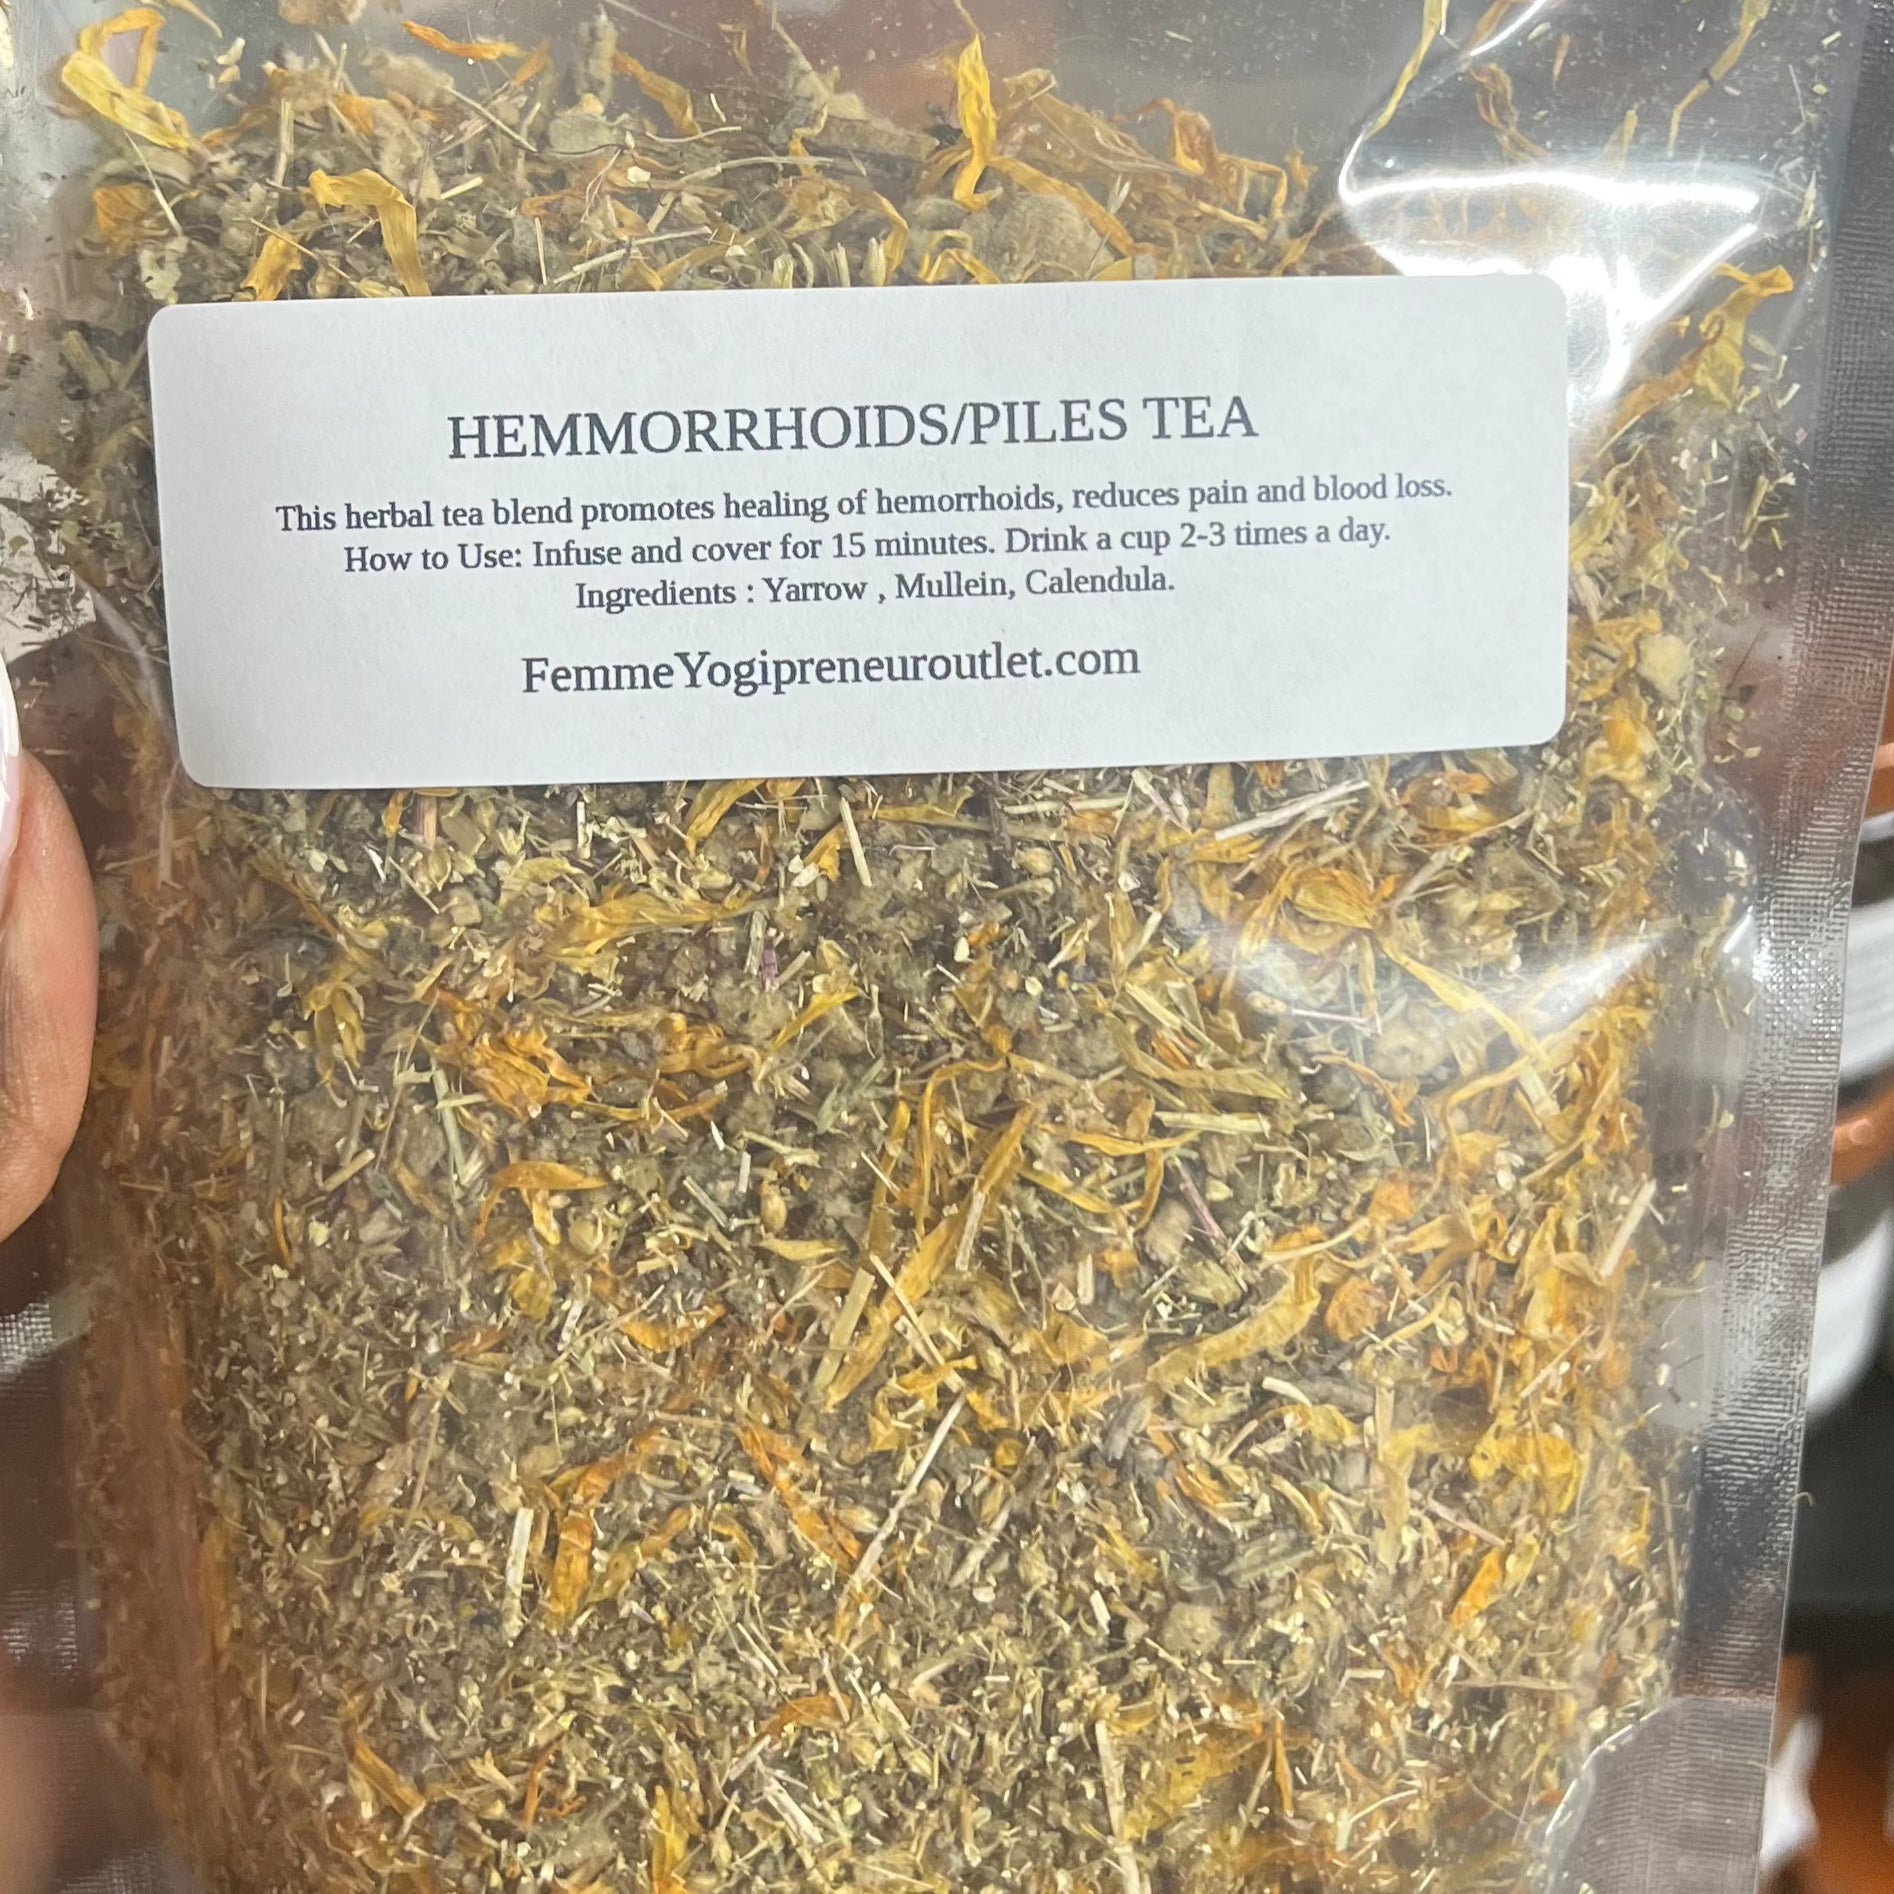 Hemorrhoids / Piles Herbal Tea Blend